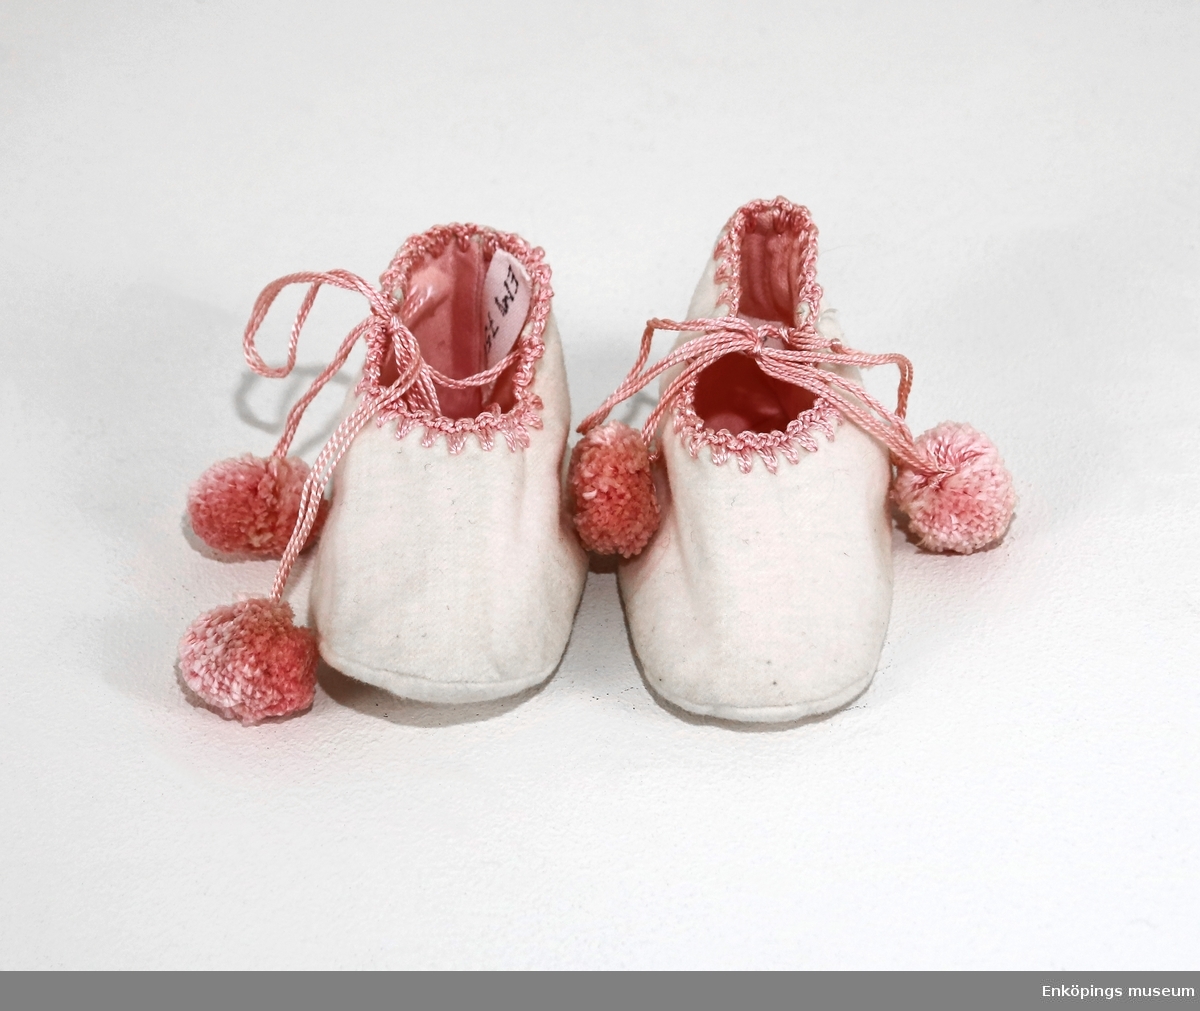 Vita flanellskor med rosa foder, toffelmodell. Skorna har virkad kant i rosa och knytband med bolltofsar. Tofflorna är tillverkade 1922.